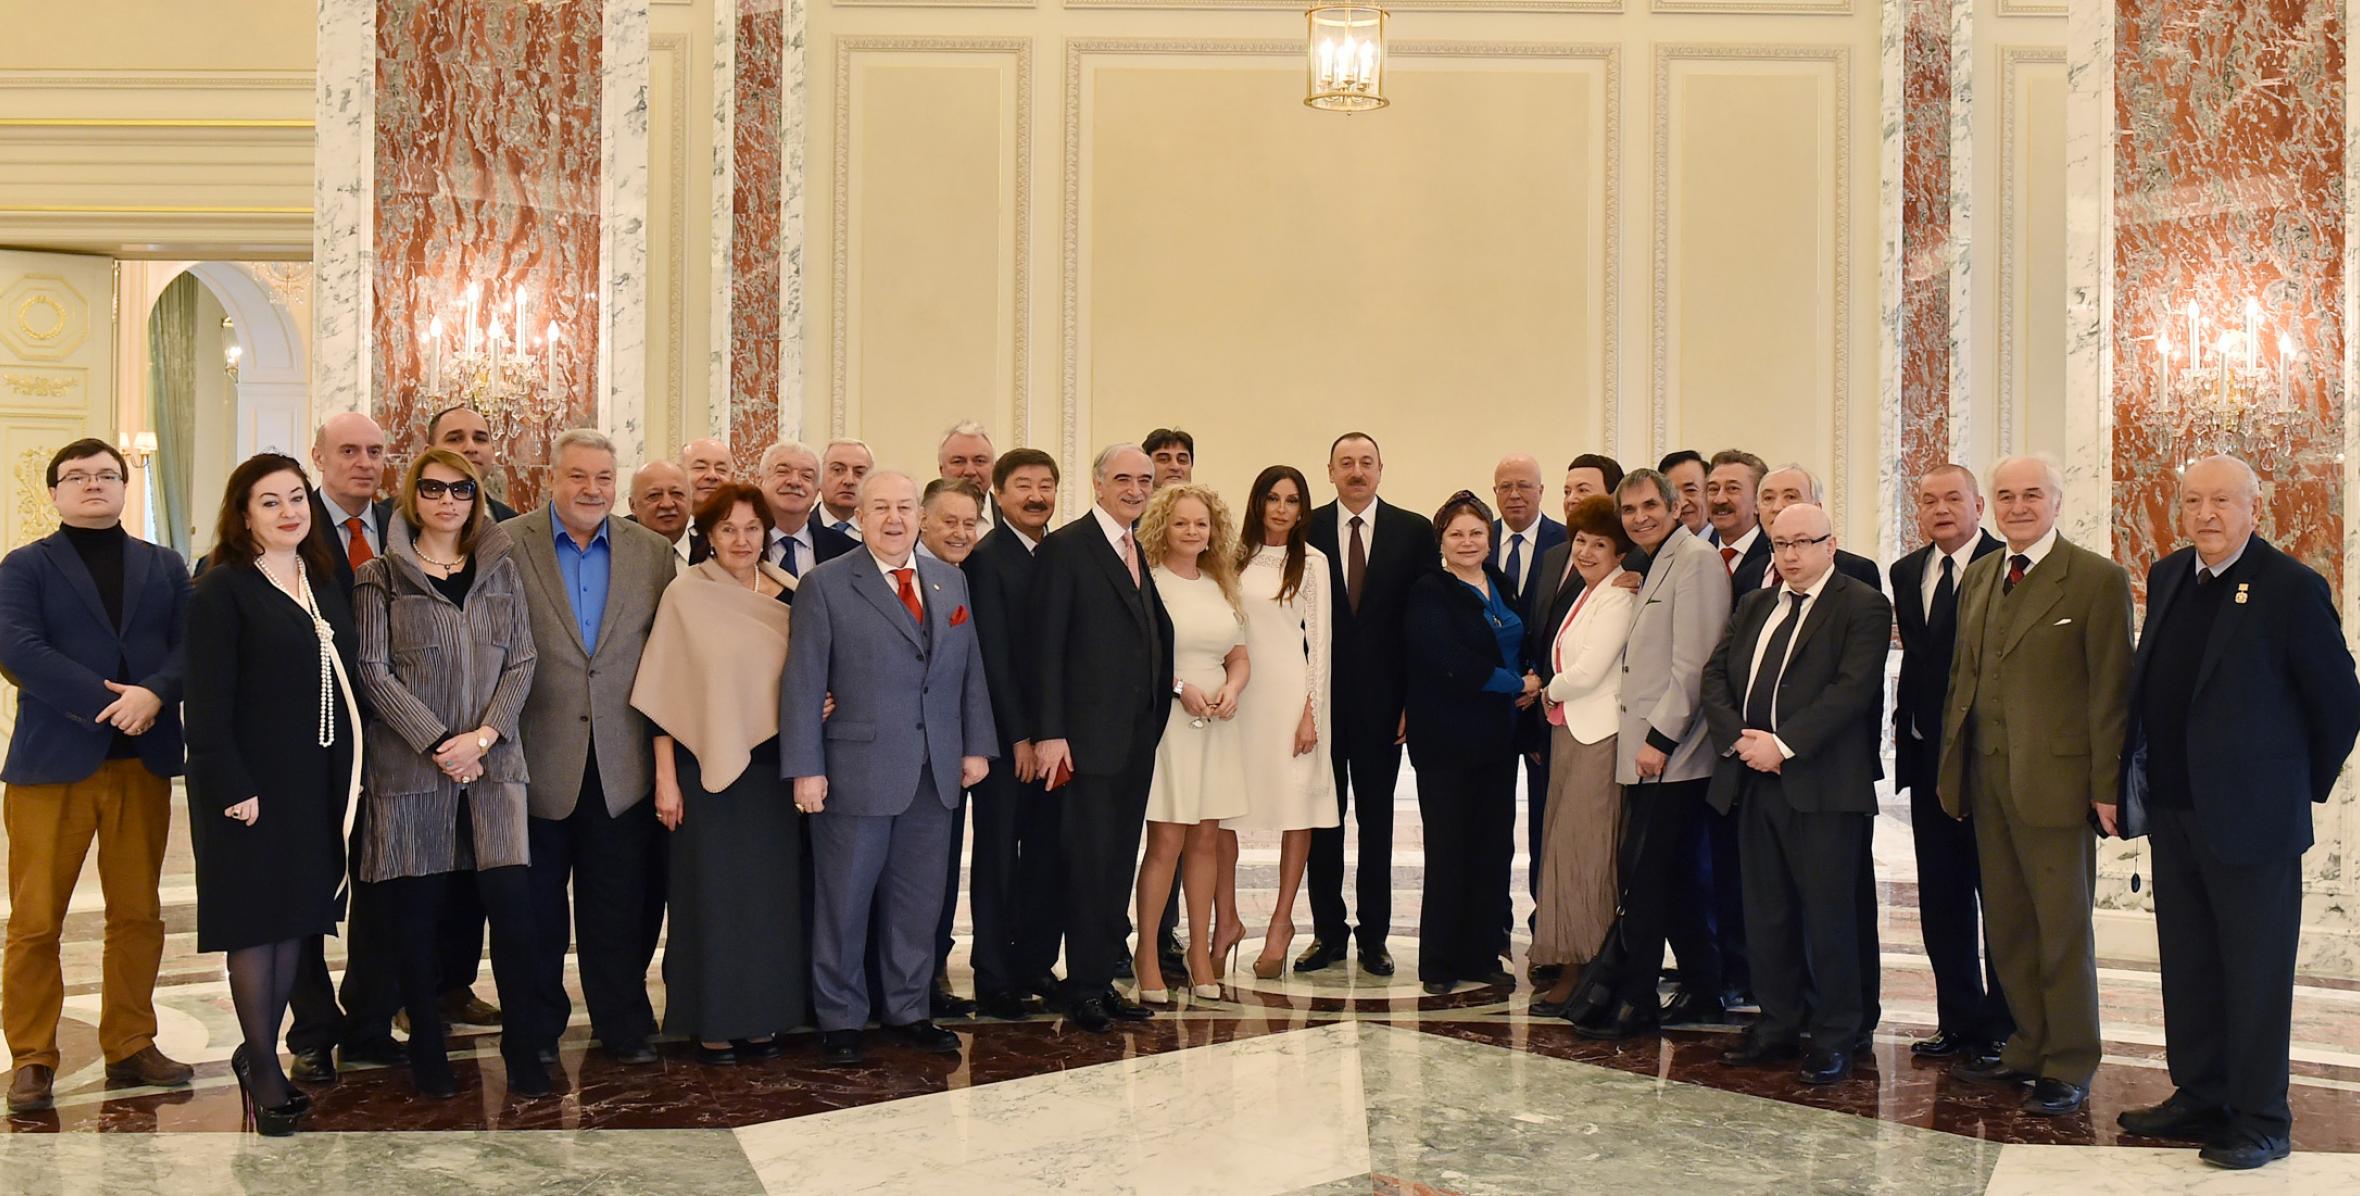 Ильхам Алиев встретился с группой известных деятелей культуры и искусства, прибывших в Баку для участия в церемонии по случаю 70-летнего юбилея Полада Бюльбюльоглу